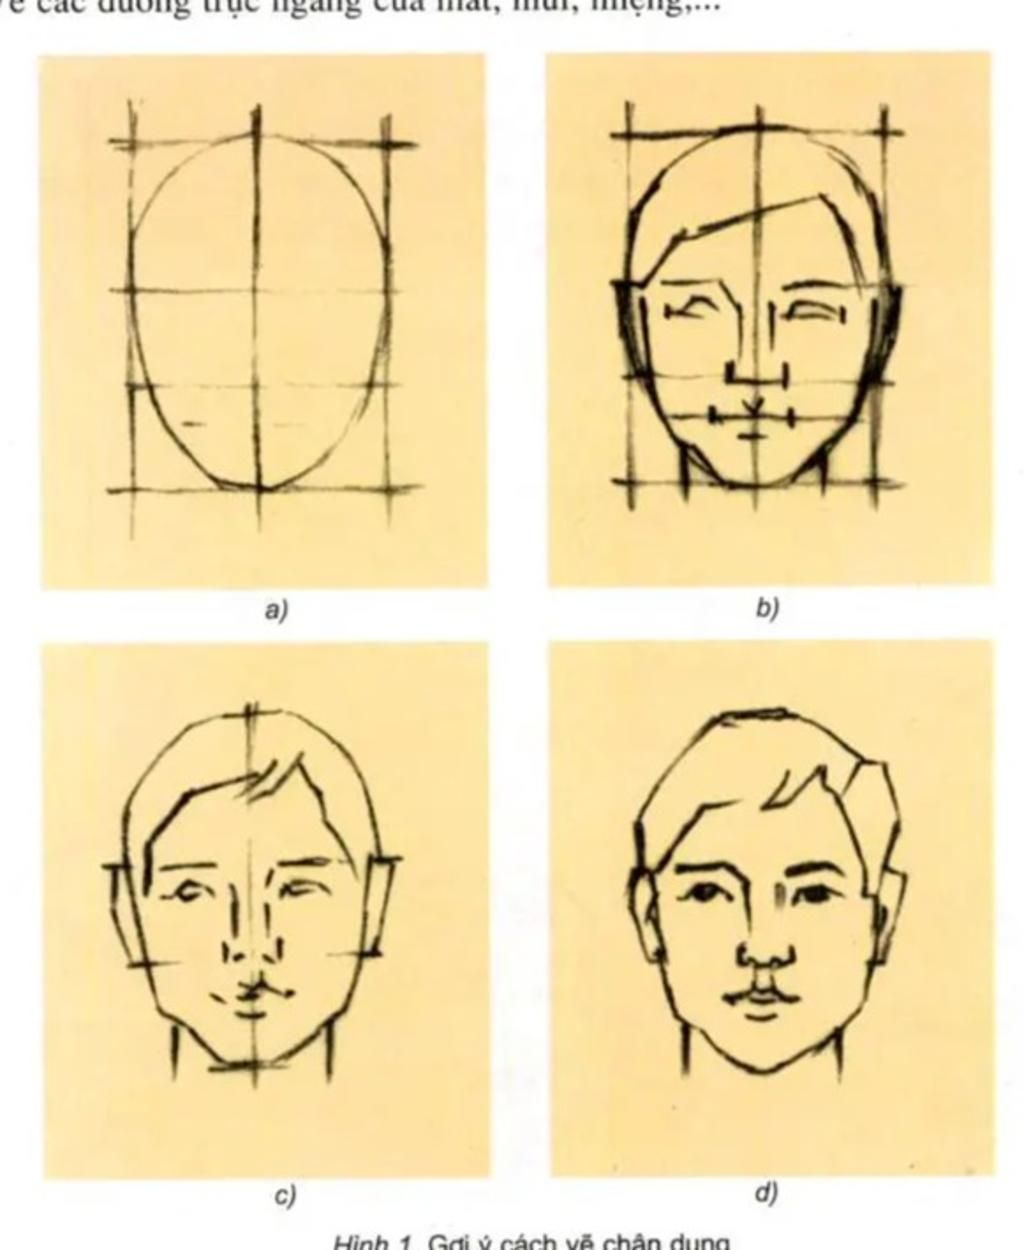 Cách vẽ chân dung Tỷ lệ khuôn mặt người vì lỗi kỹ thuật 2 phút đầu nhạc  hơi ồn  YouTube